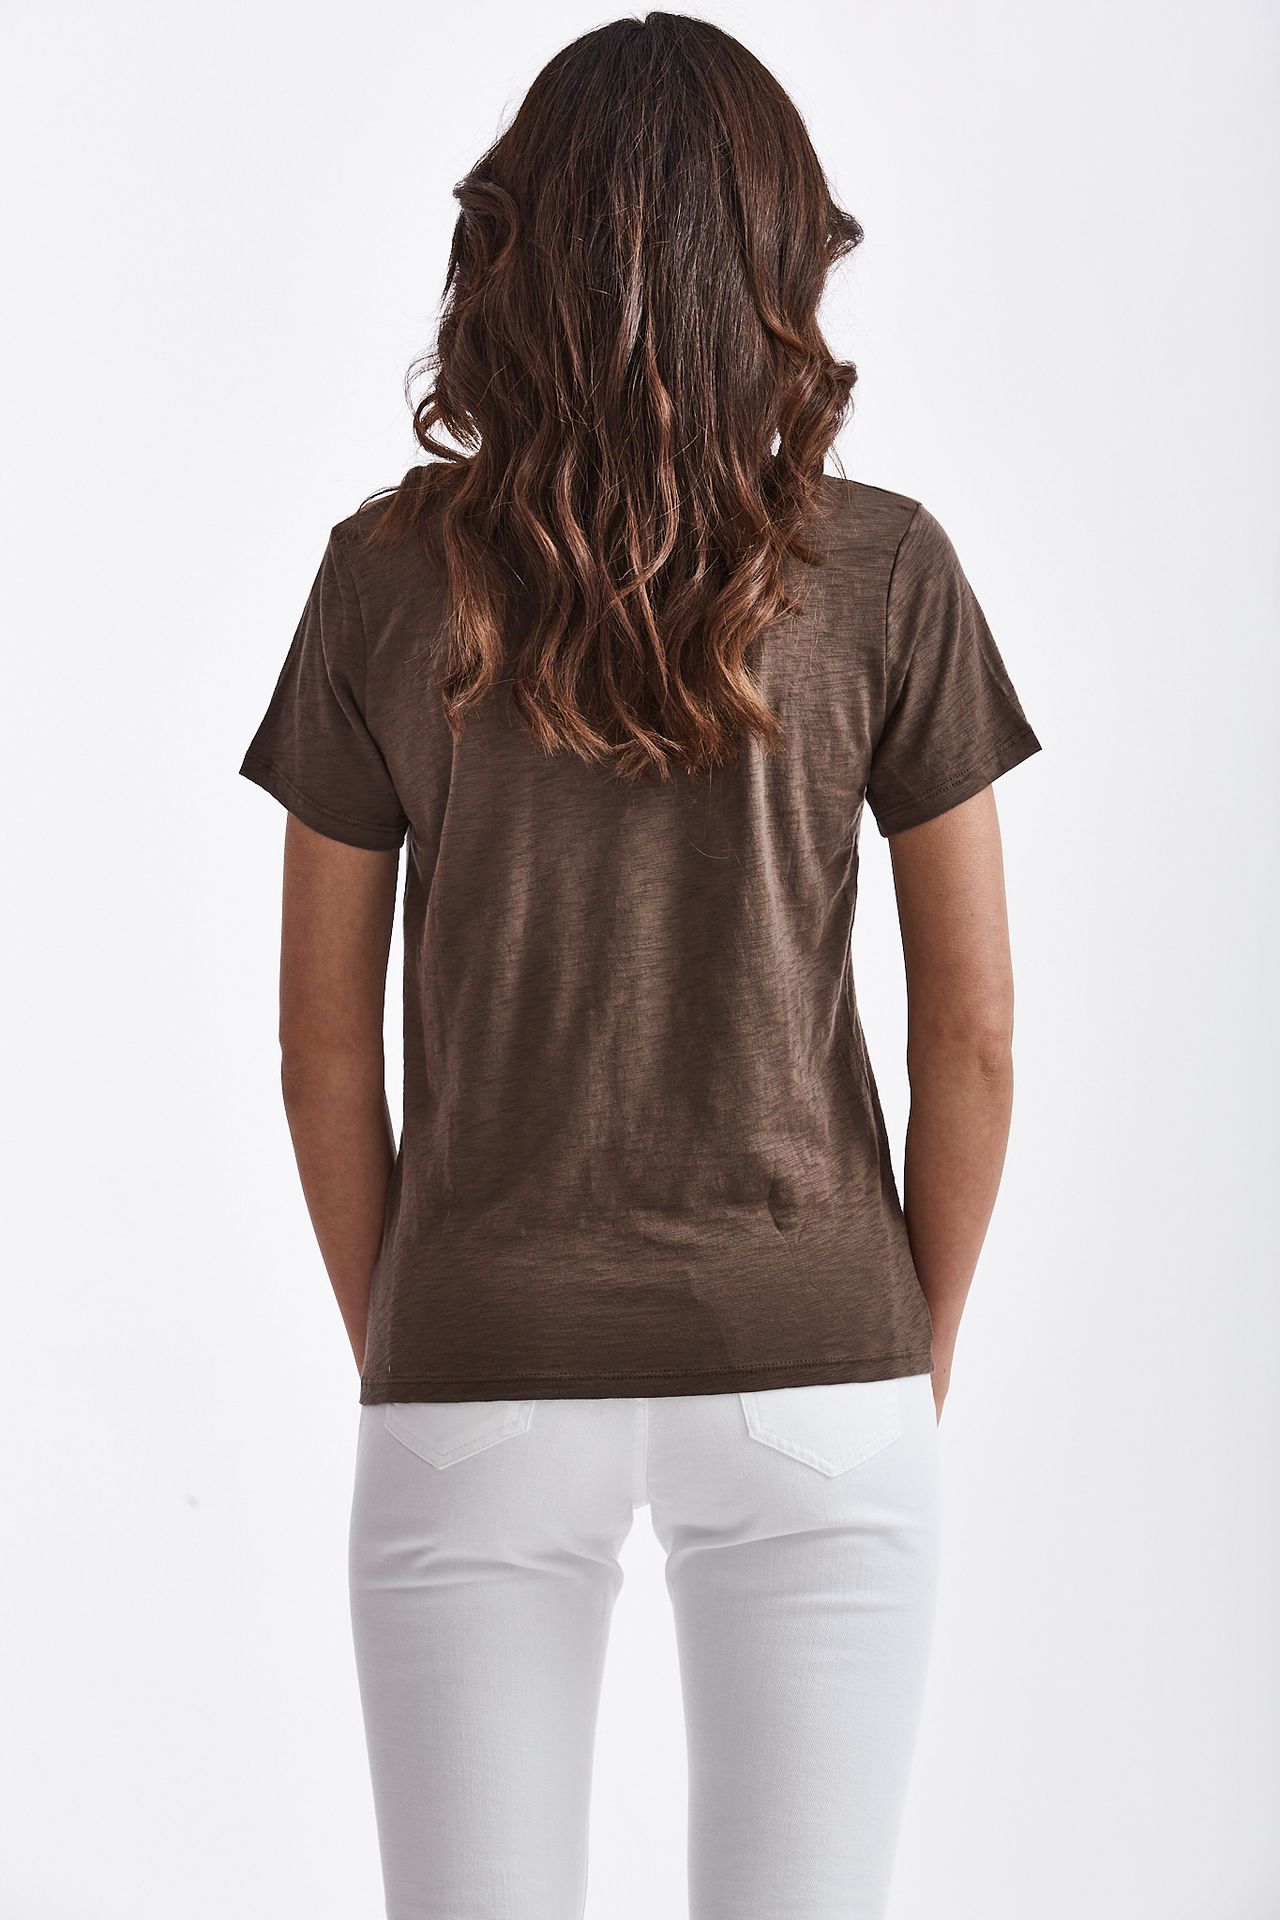 T-shirt ROMY FIAMMATA in cotone marrone